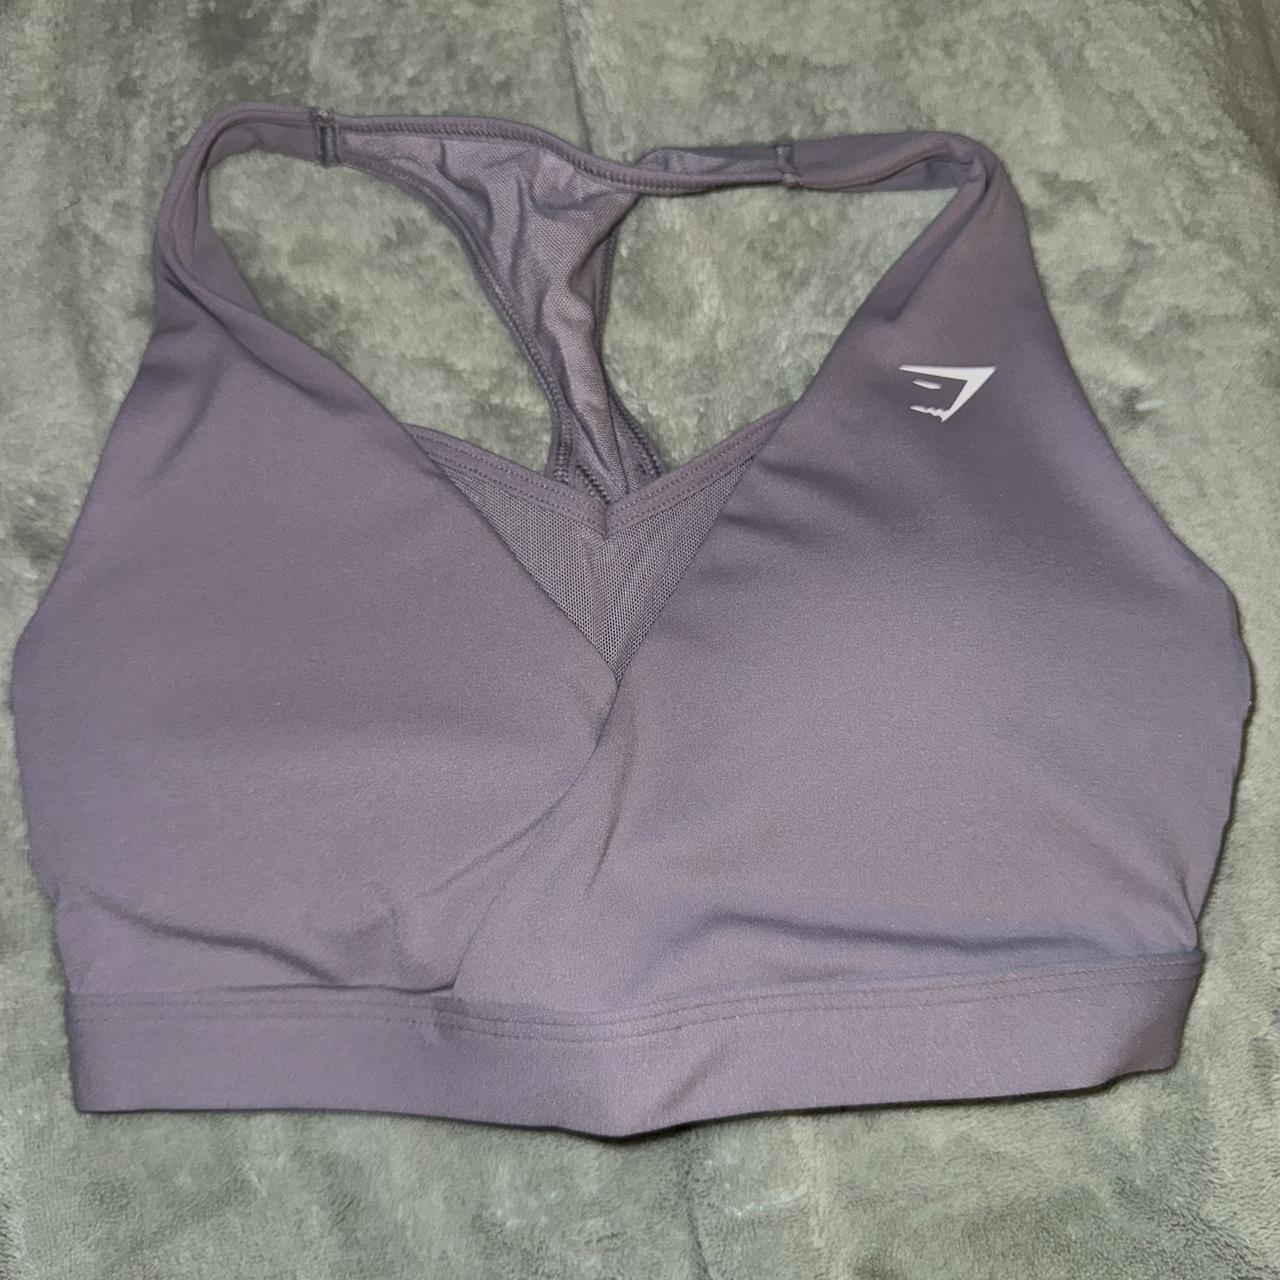 Sports bra Size small Dm to buy - Depop